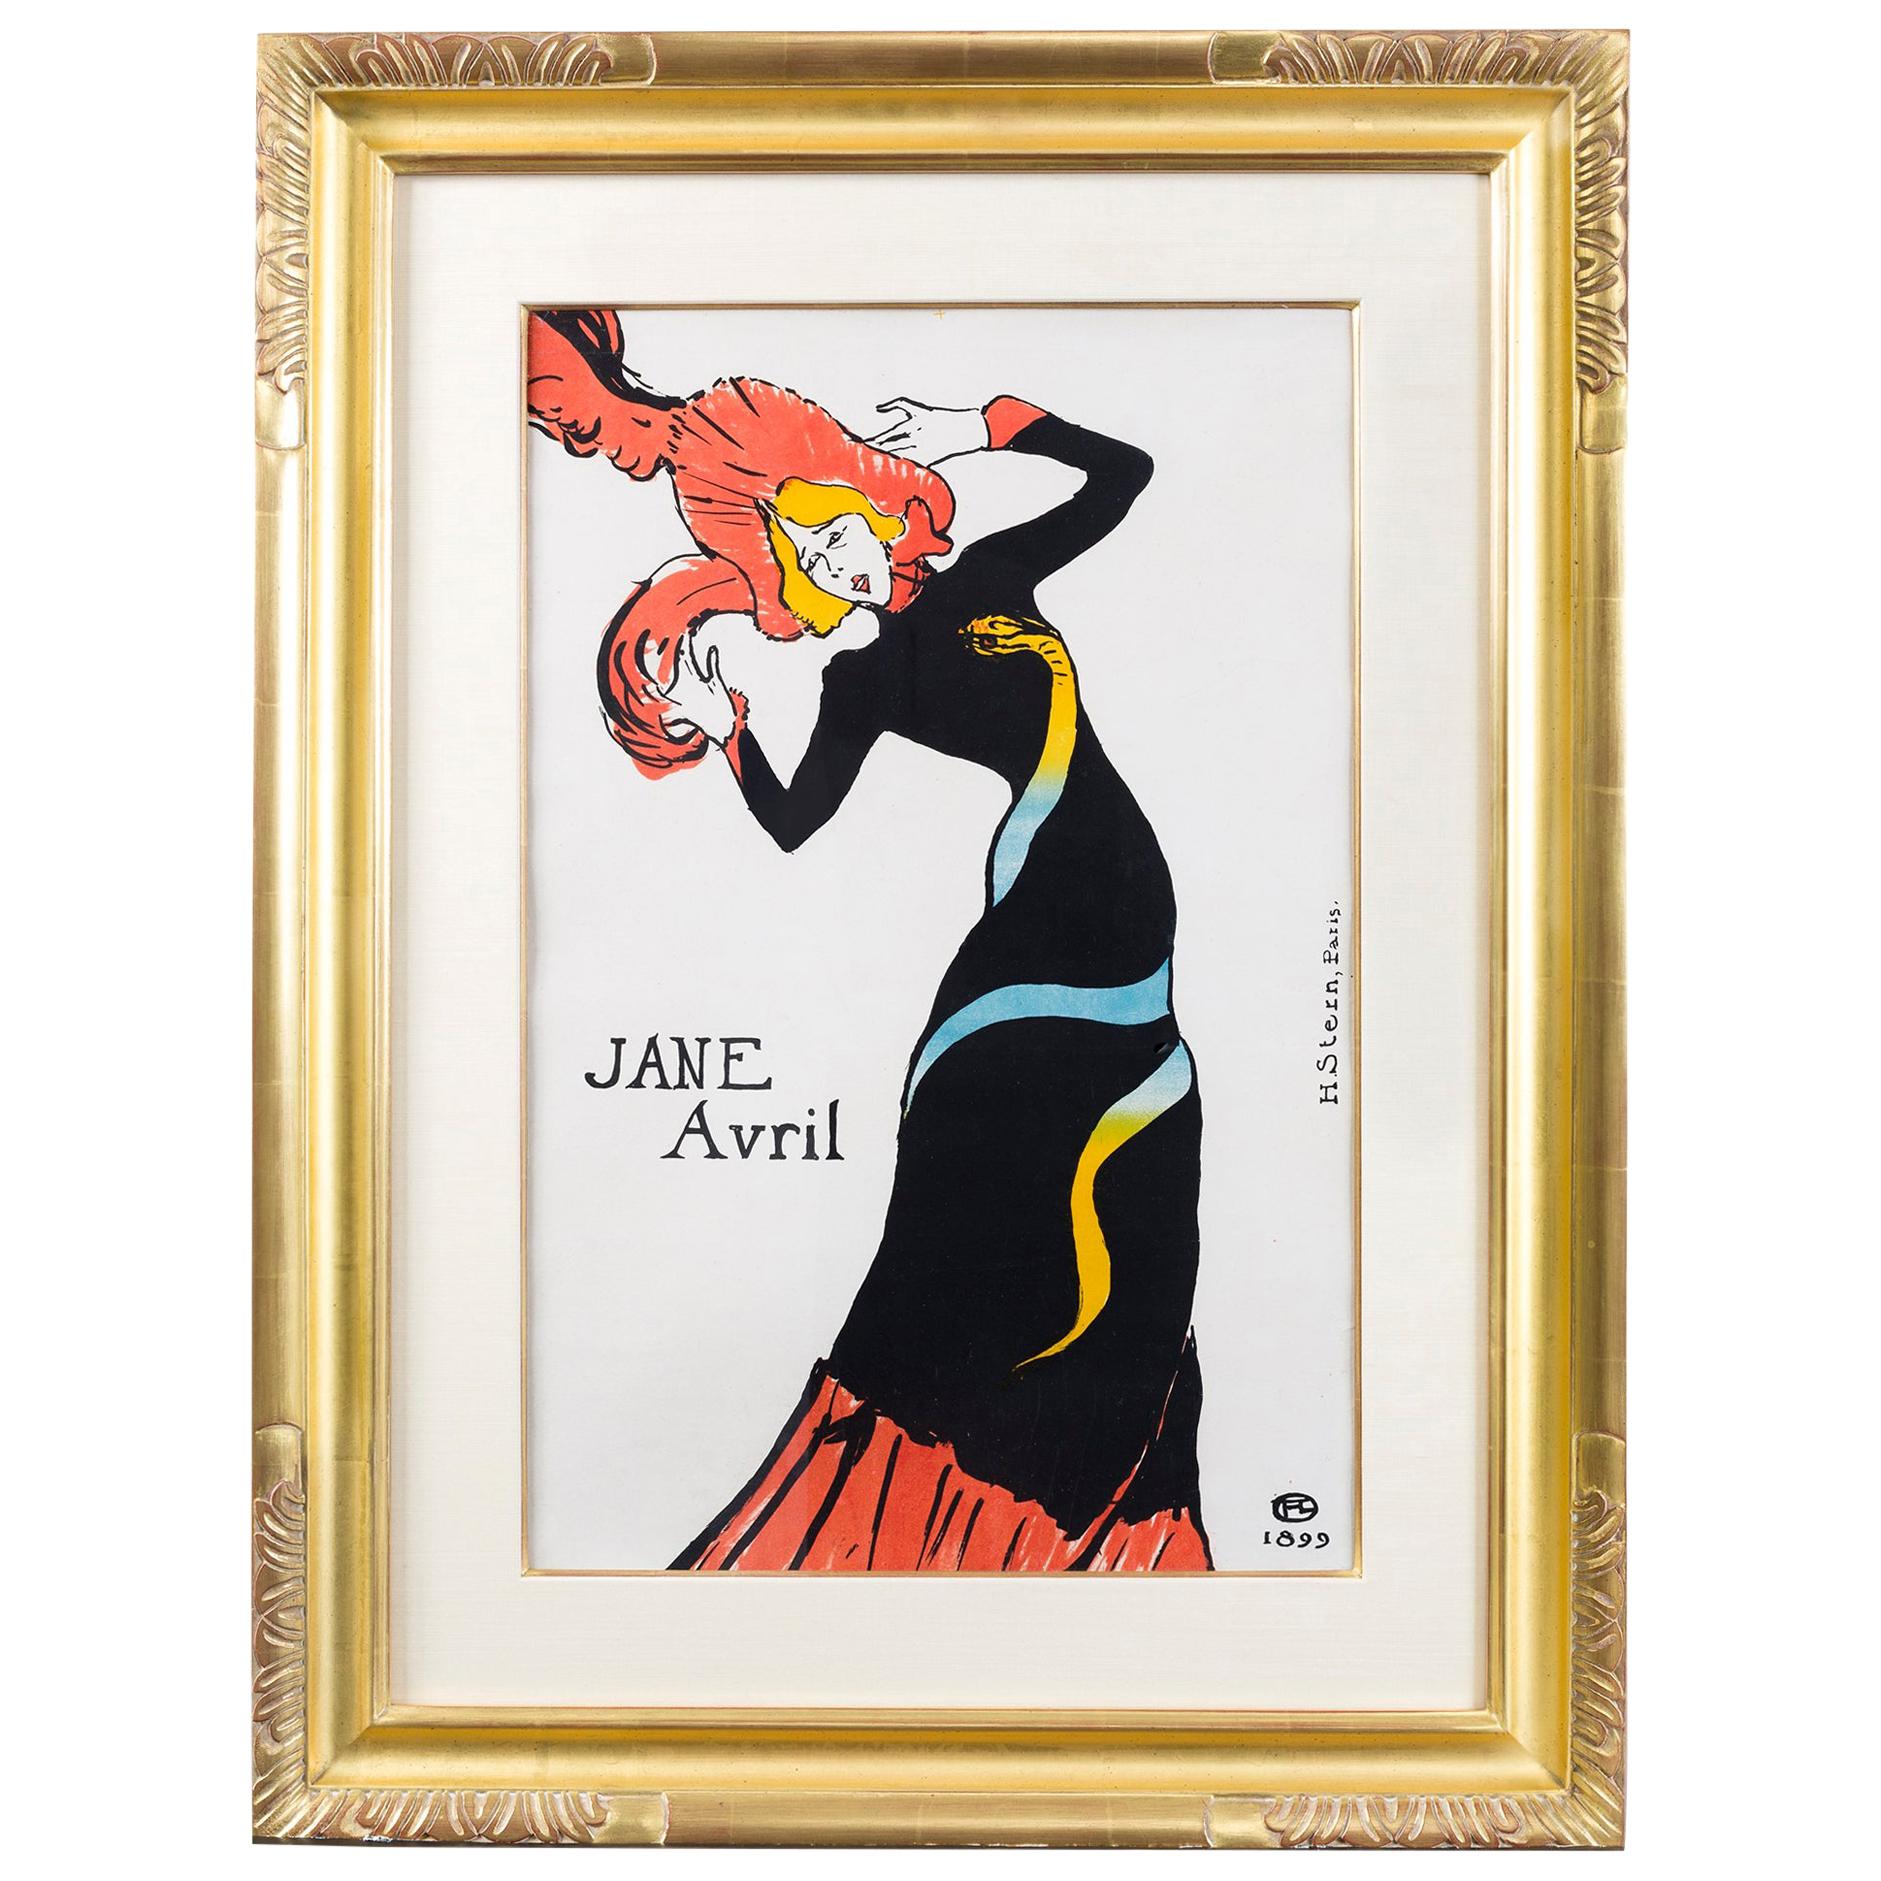 Henri de Toulouse-Lautrec "Jane Avril" Lithograph For Sale